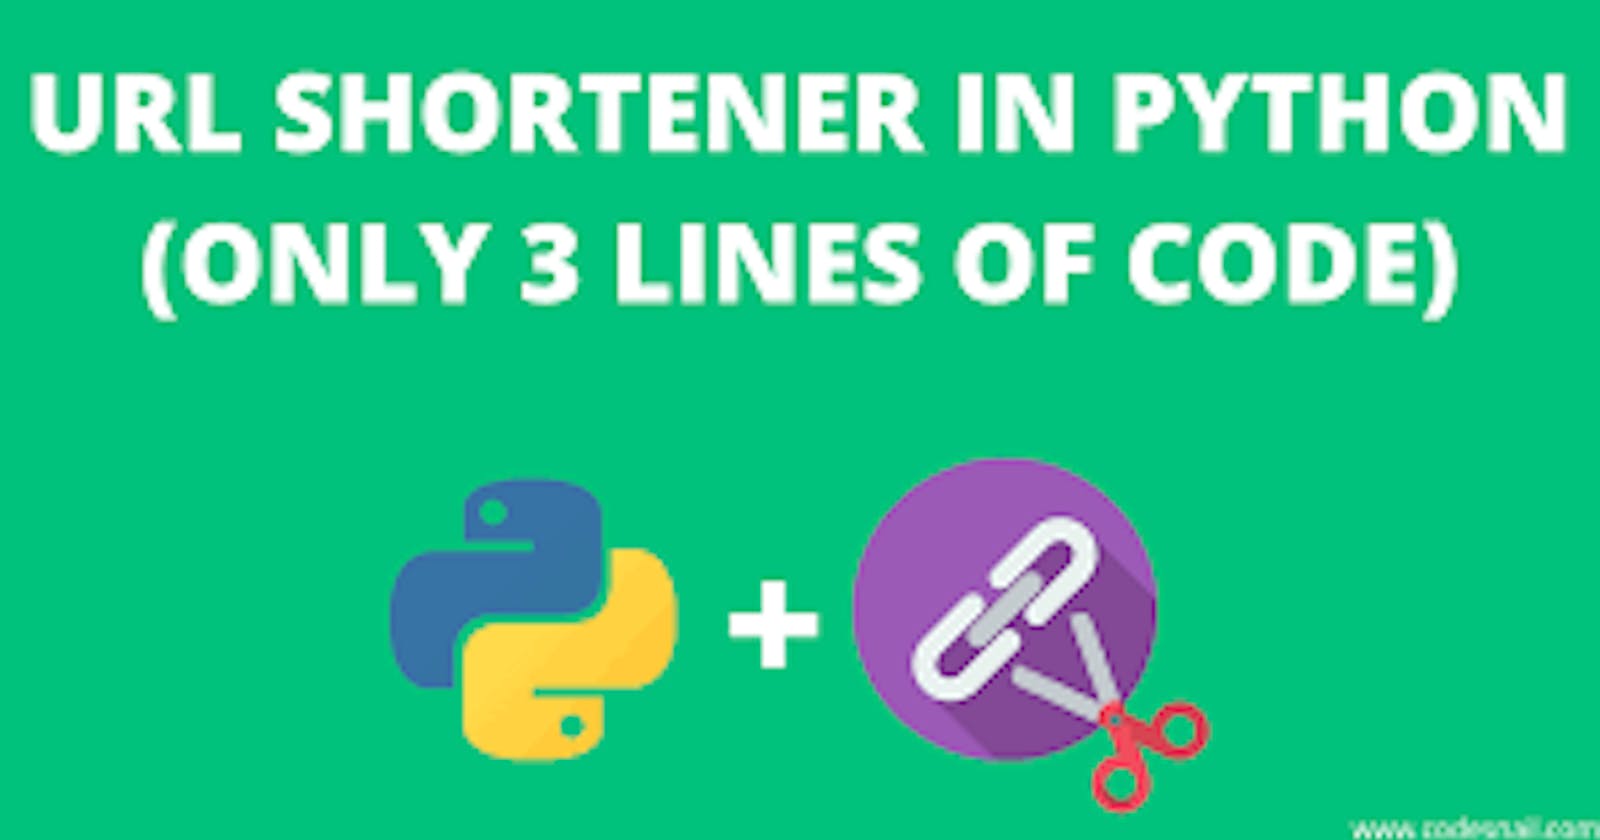 URL Shortener Using Python